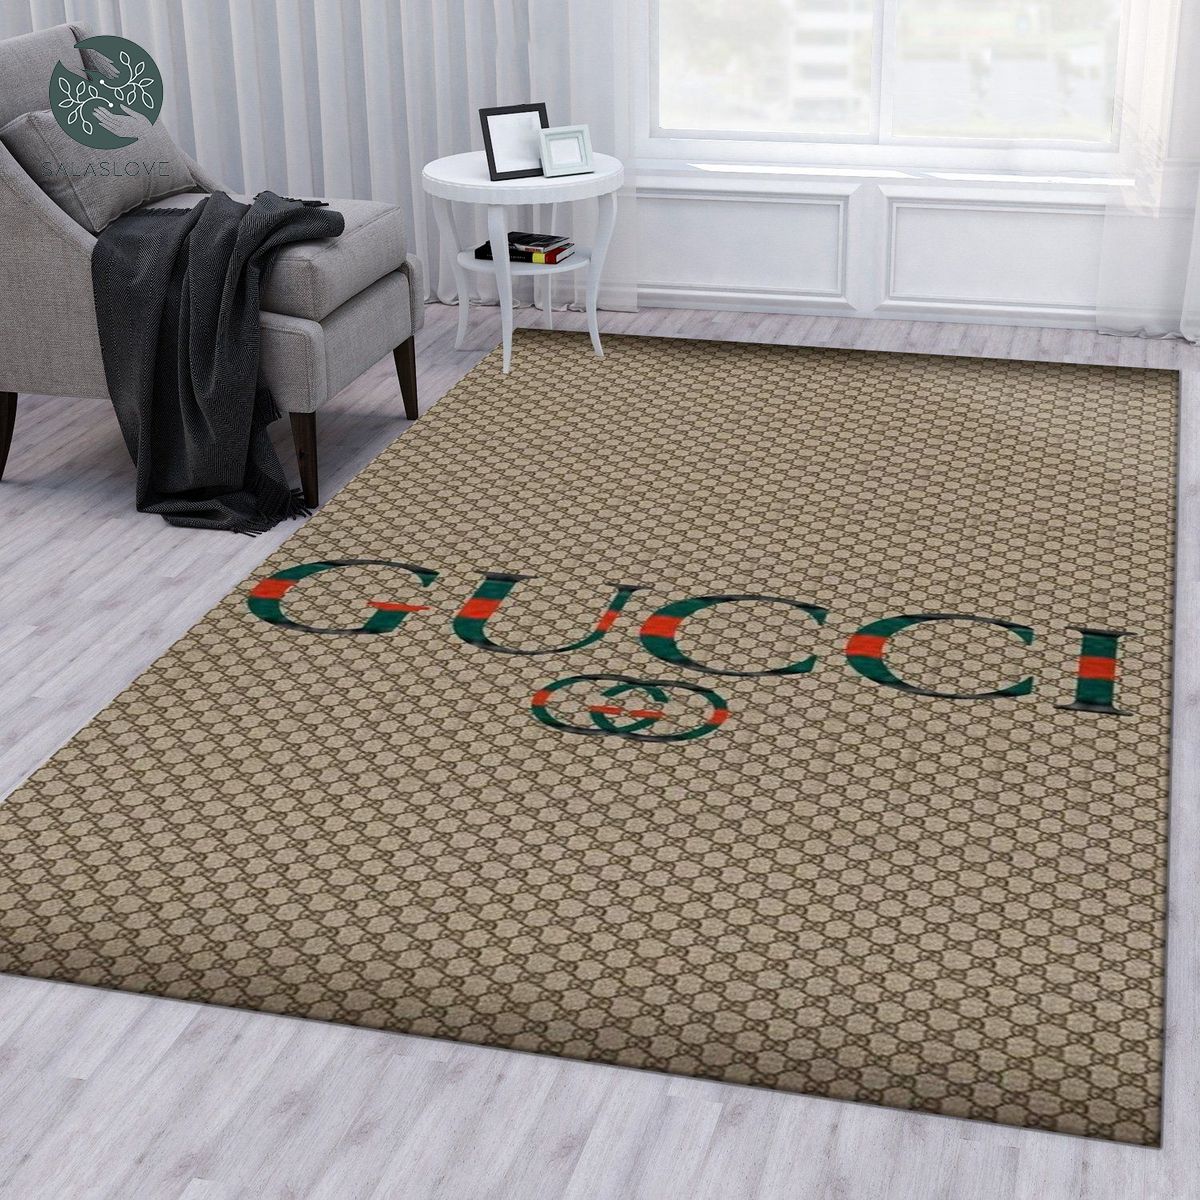 Gucci area rug for christmas living room rug family decor